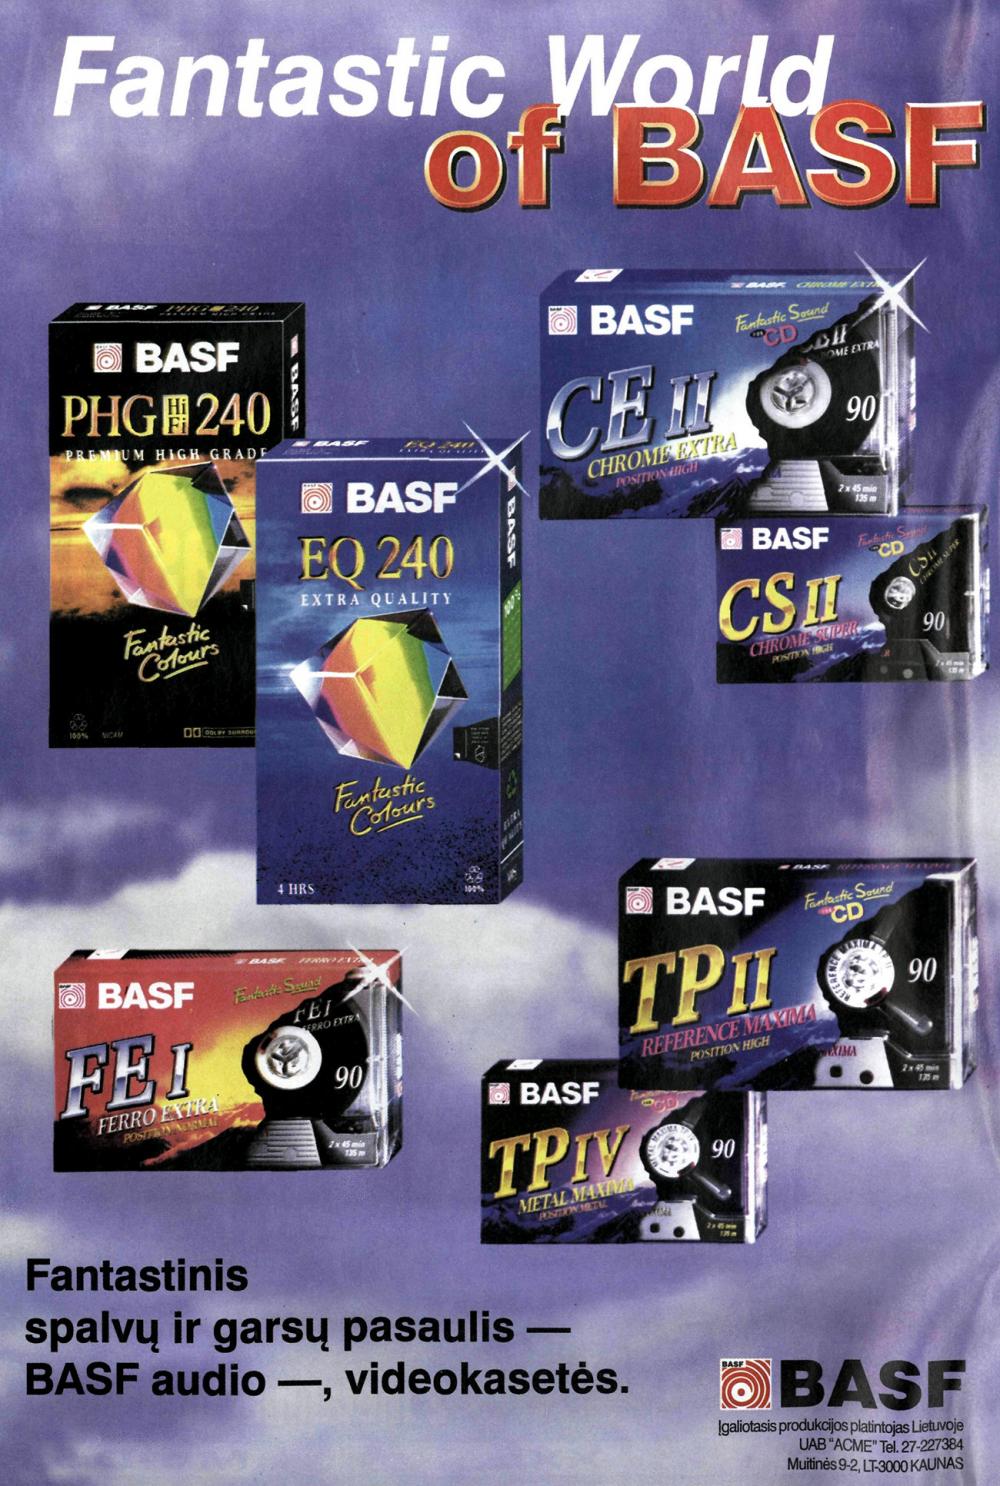 Fantastinis spalvų ir garsų pasaulis - BASF audio-, videokasetės